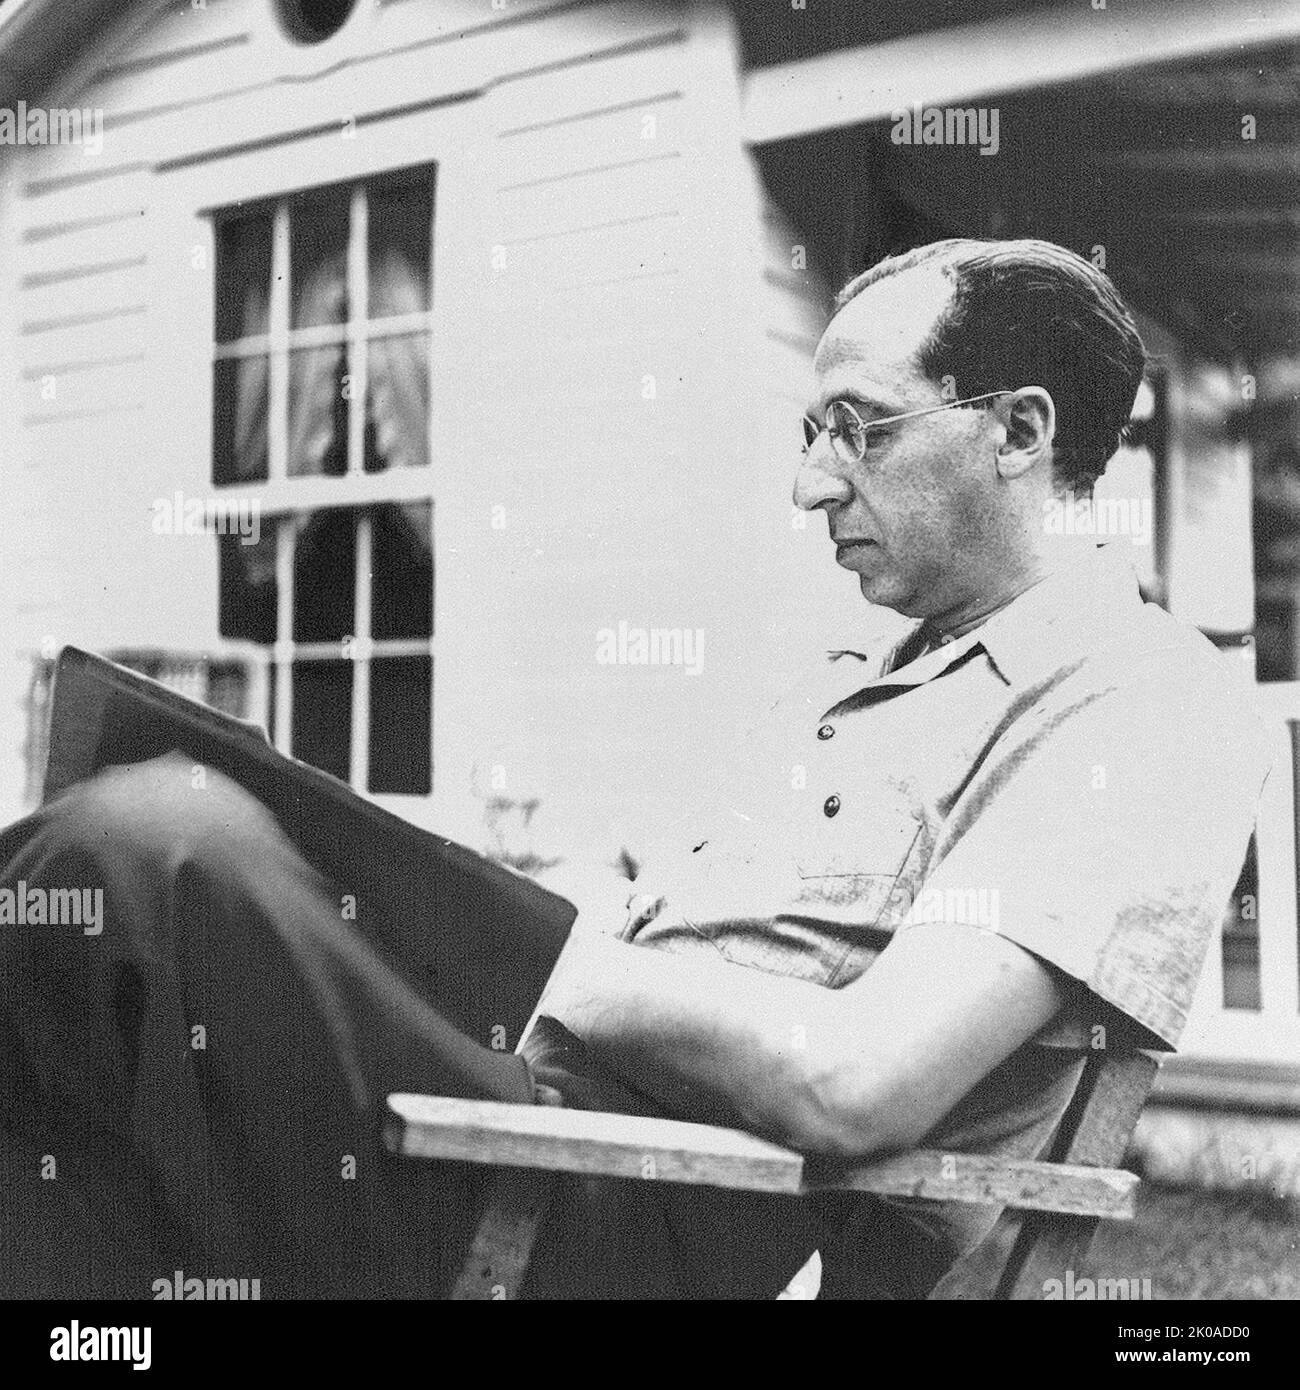 Aaron Copland (1900 - 1990) était un compositeur américain, un professeur de composition, un écrivain et plus tard un chef d'orchestre de sa propre musique et d'autres musiques américaines. Copland a été désigné par ses pairs et ses critiques comme « le doyen des compositeurs américains » Banque D'Images